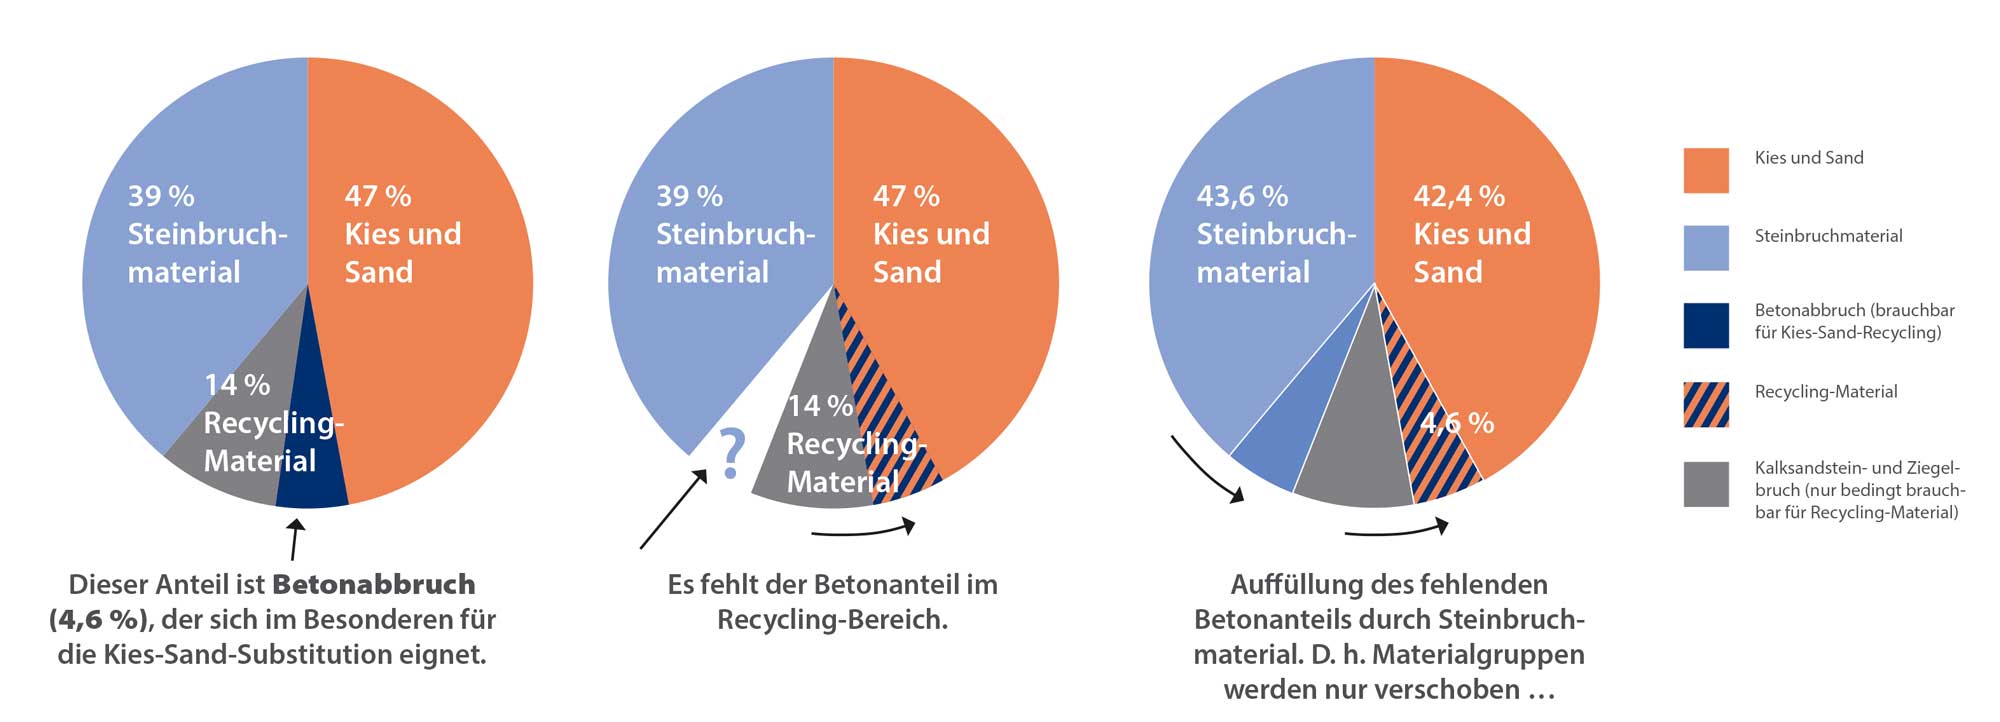 Der mineralische Anteil im Recycling-Material wird in den Kies-Sand-Markt verschoben, um anschließend mit Steinbruchmaterial wieder aufgefüllt zu werden